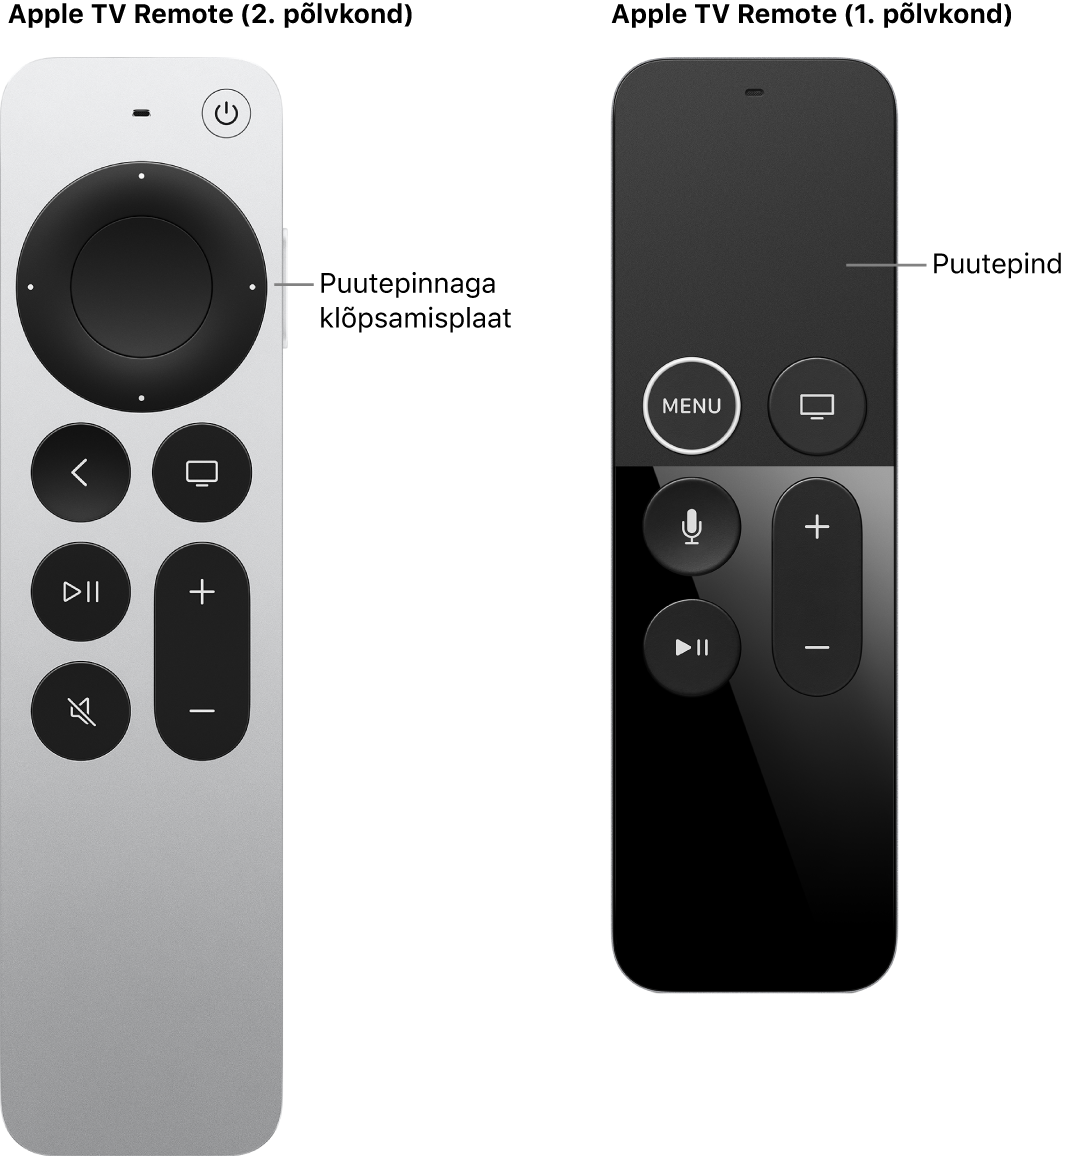 Apple TV Remote (2. ja 3. põlvkond) klõpsamisplaadiga ning Apple TV Remote (1. põlvkond) puutepinnaga.